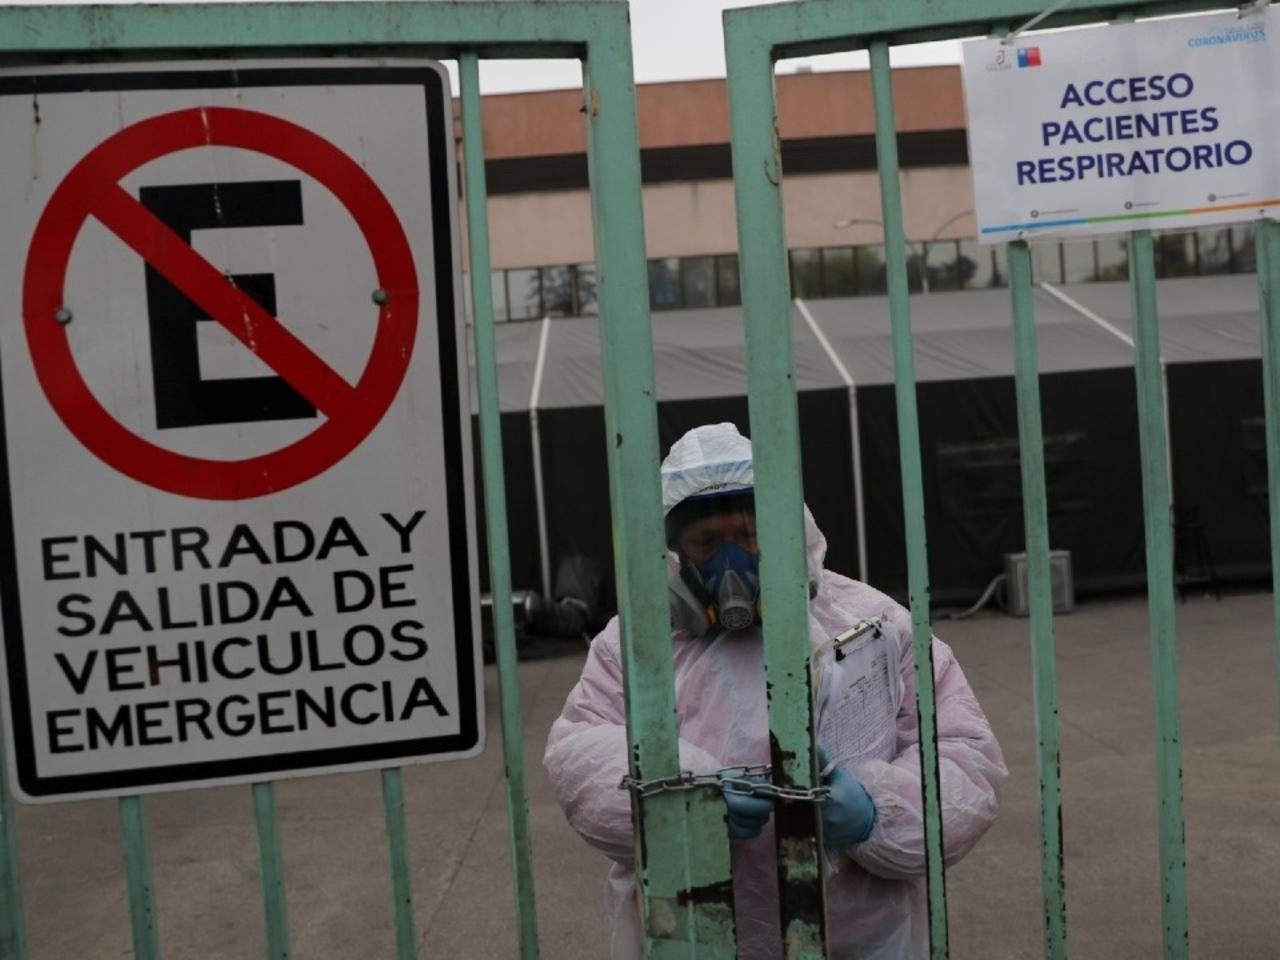  Chile anunció desconfinamiento gradual tras meses de restricciones